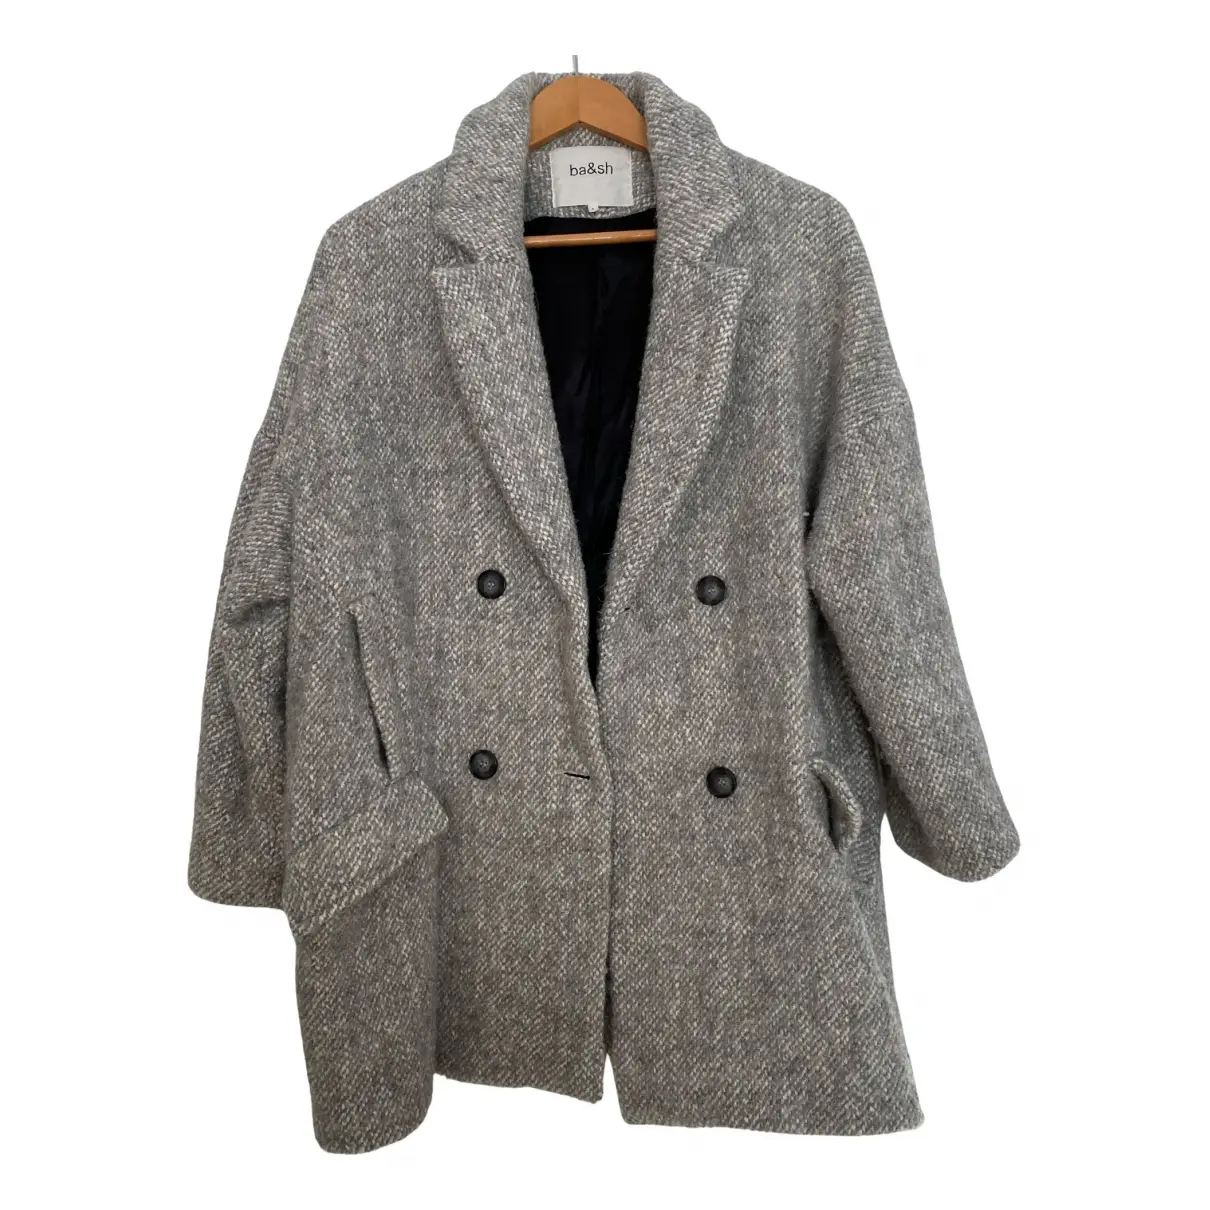 Fall Winter 2020 wool coat Ba&sh